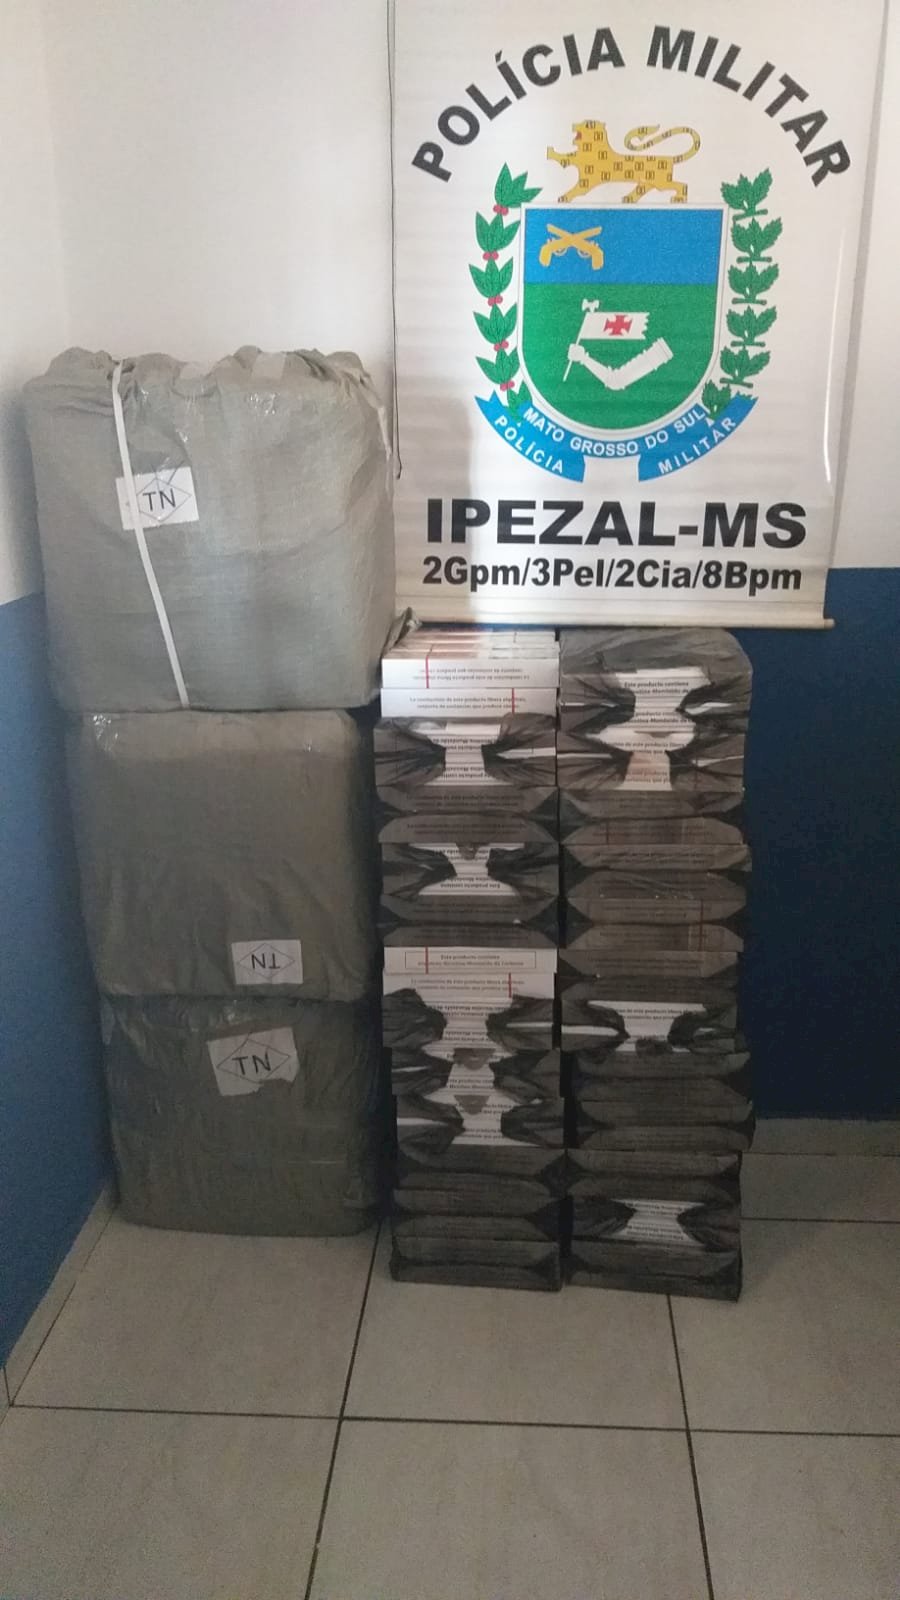 Angélica - Polícia Militar apreende mercadorias de contrabando e descaminho em Ipezal